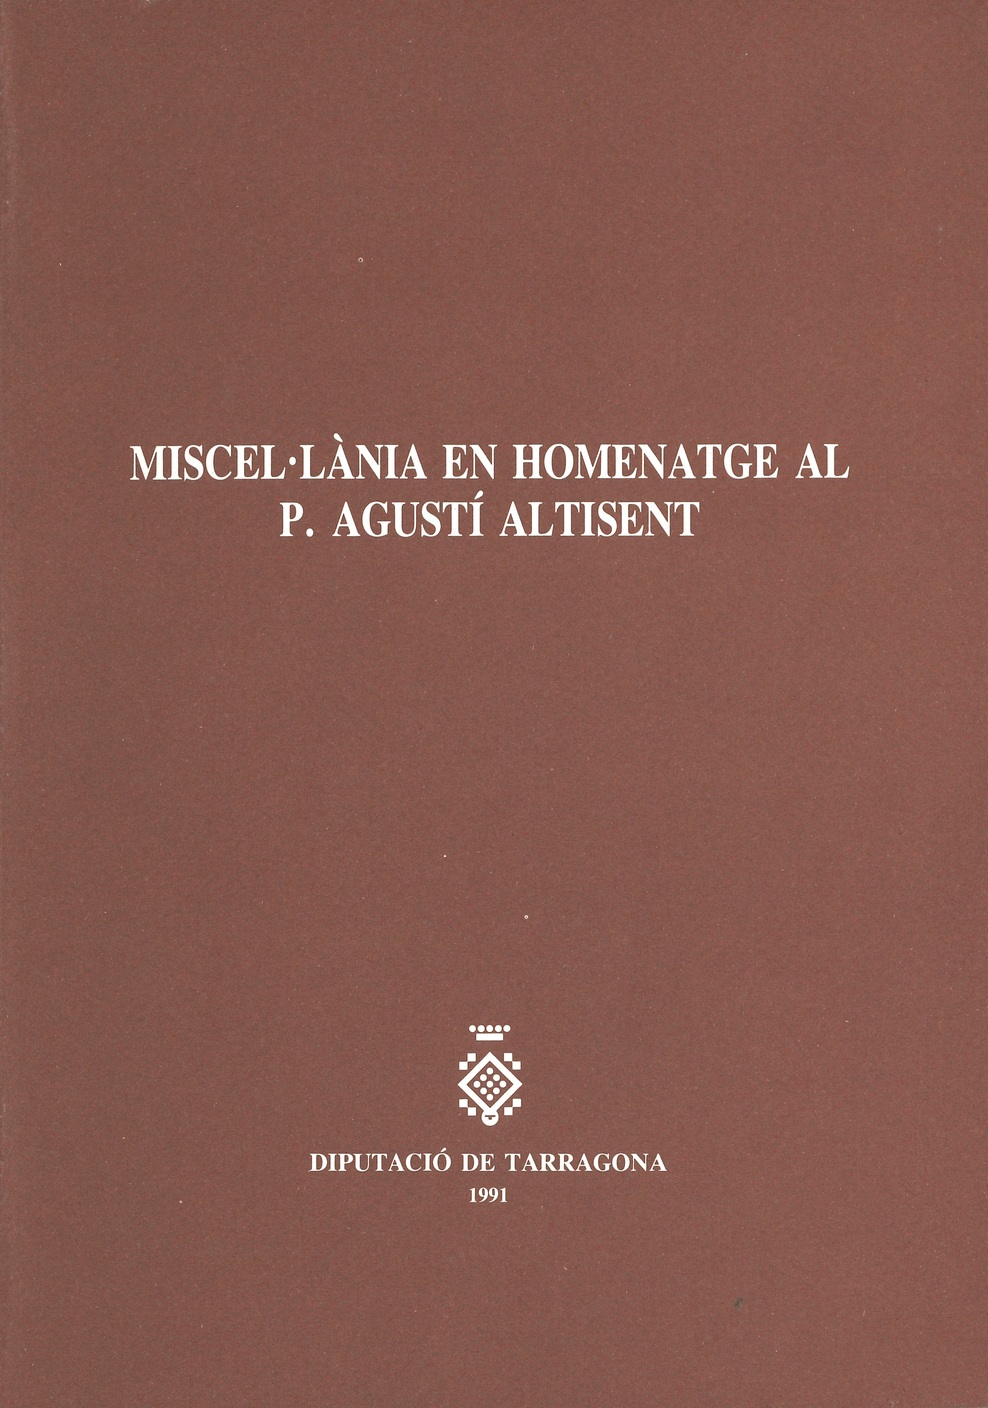 Imagen de portada del libro Miscel·lània en homenatge al P. Agustí Altisent